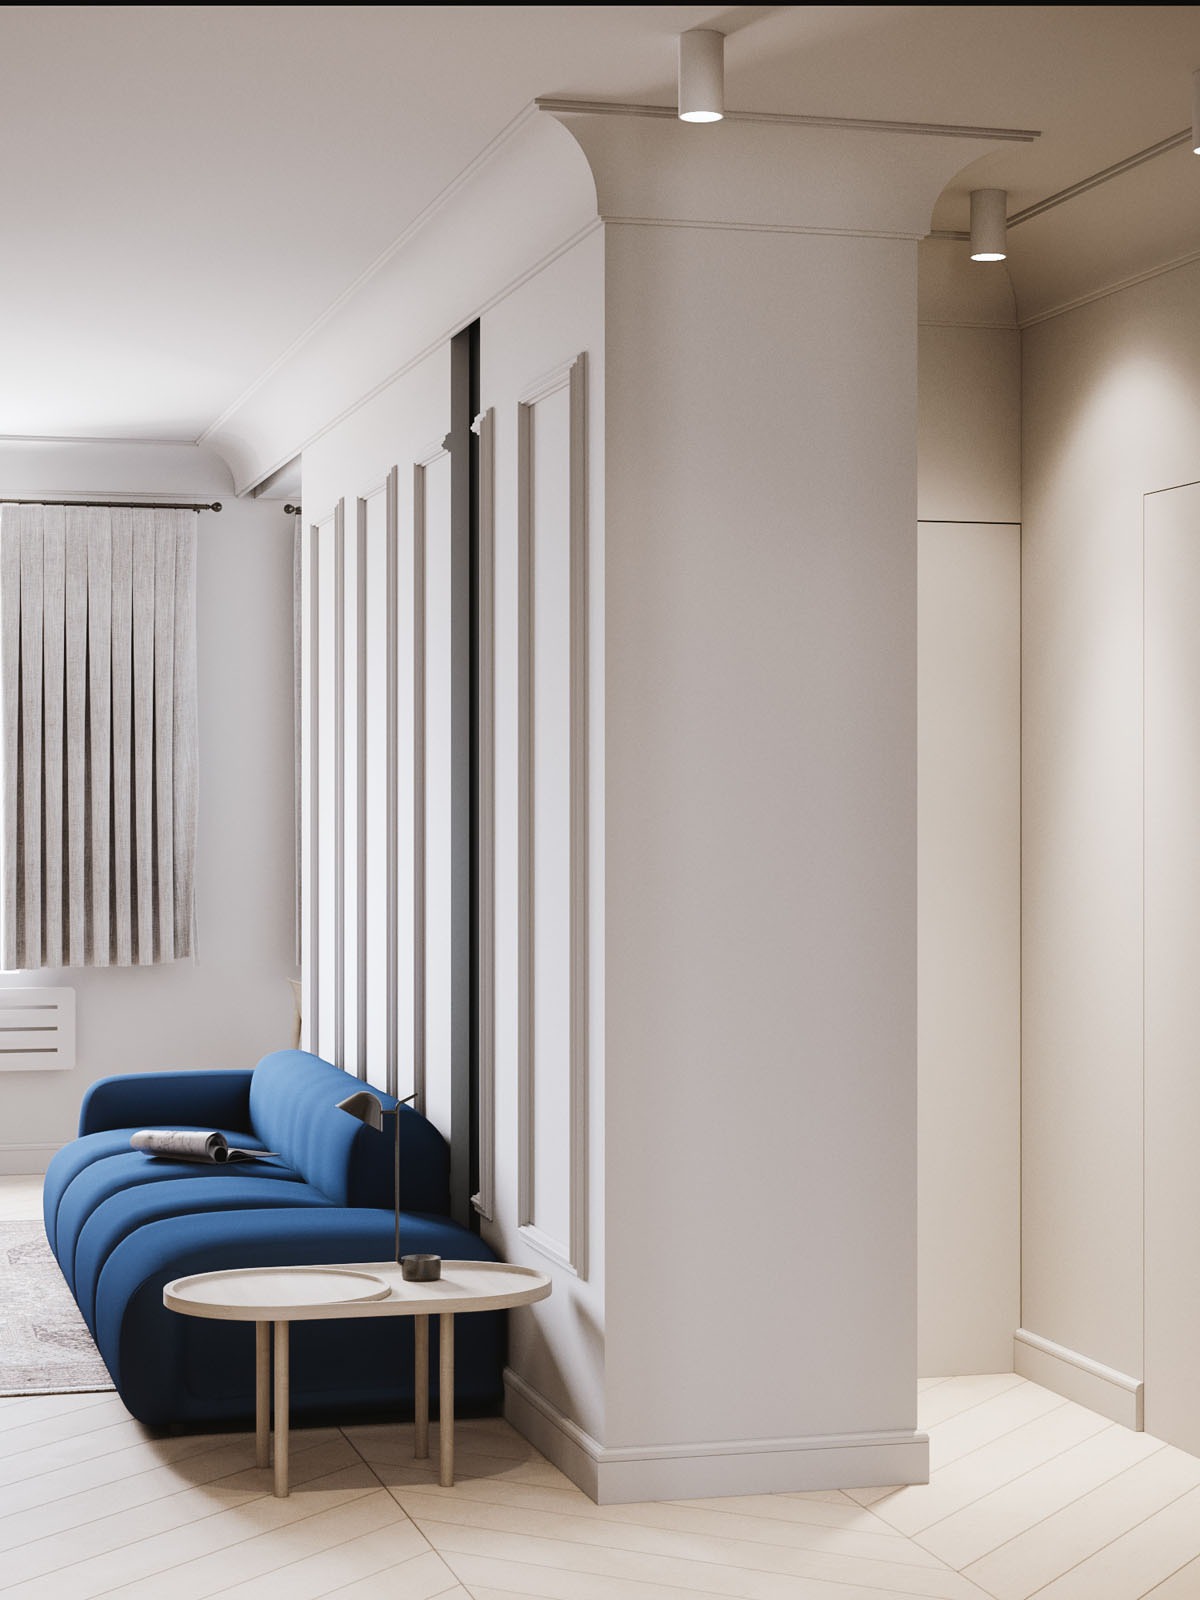 3个简约宁静的北欧风格公寓装修设计